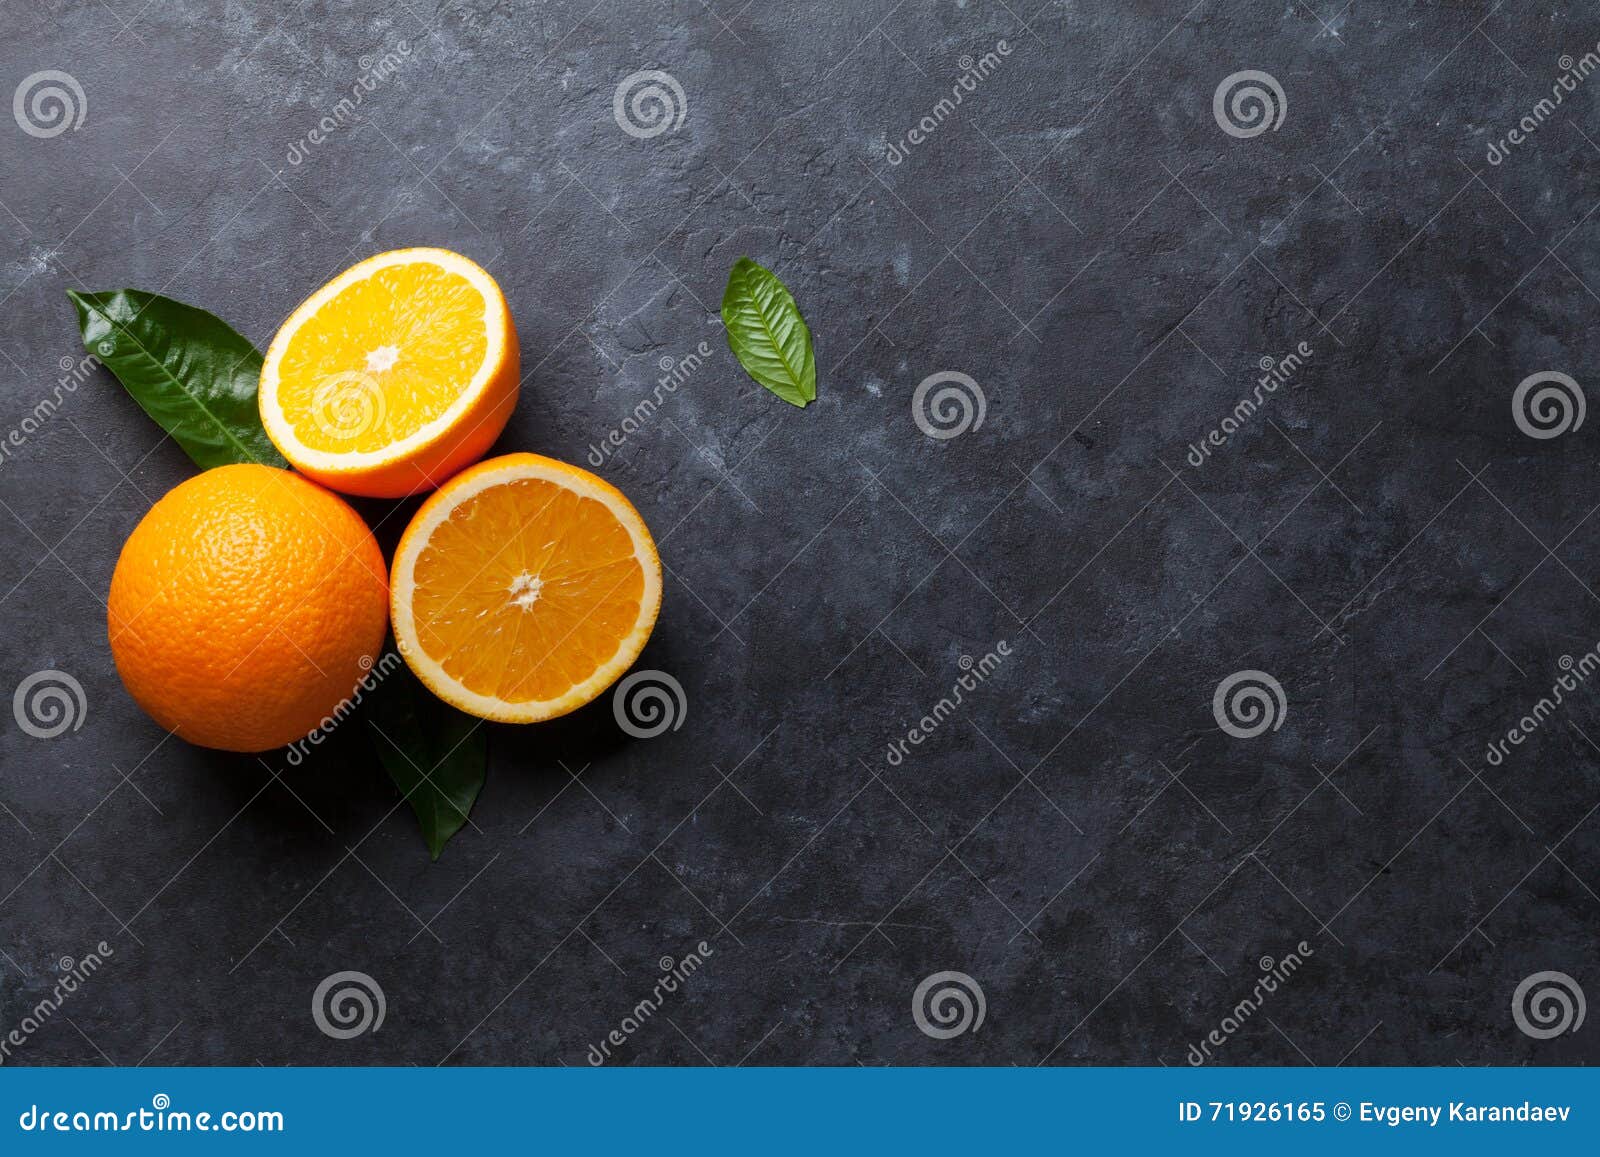 Fruits oranges frais sur la table en pierre Vue supérieure avec l'espace de copie